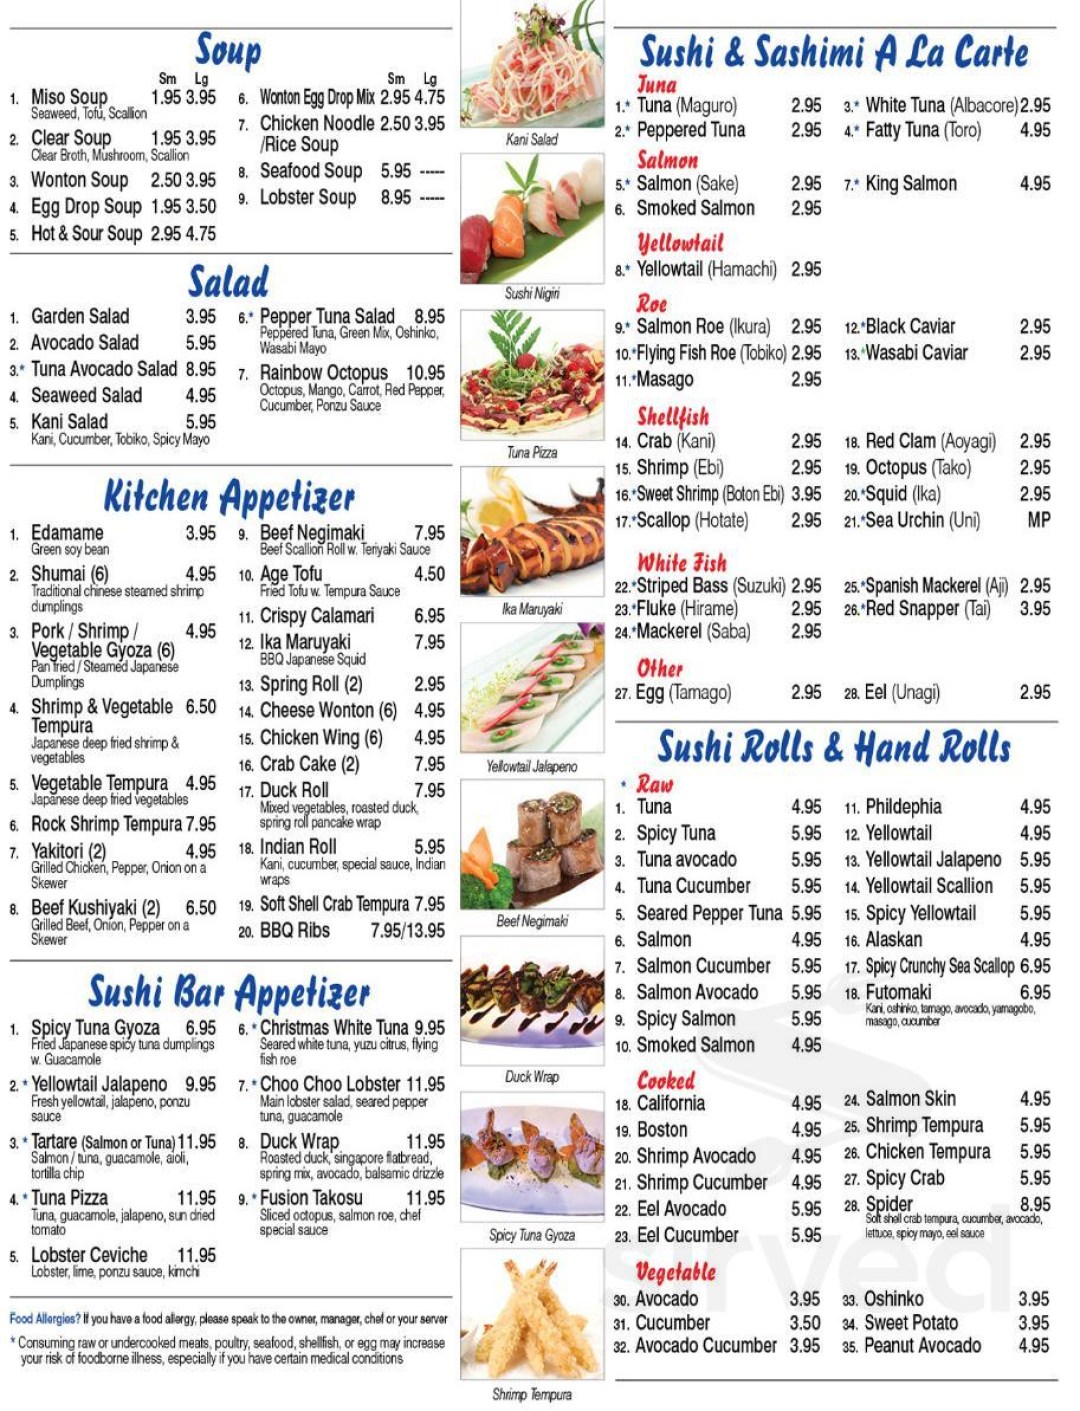 Picture of: Mikado Sushi Hibachi Restaurant menu in Center Moriches, New York, USA